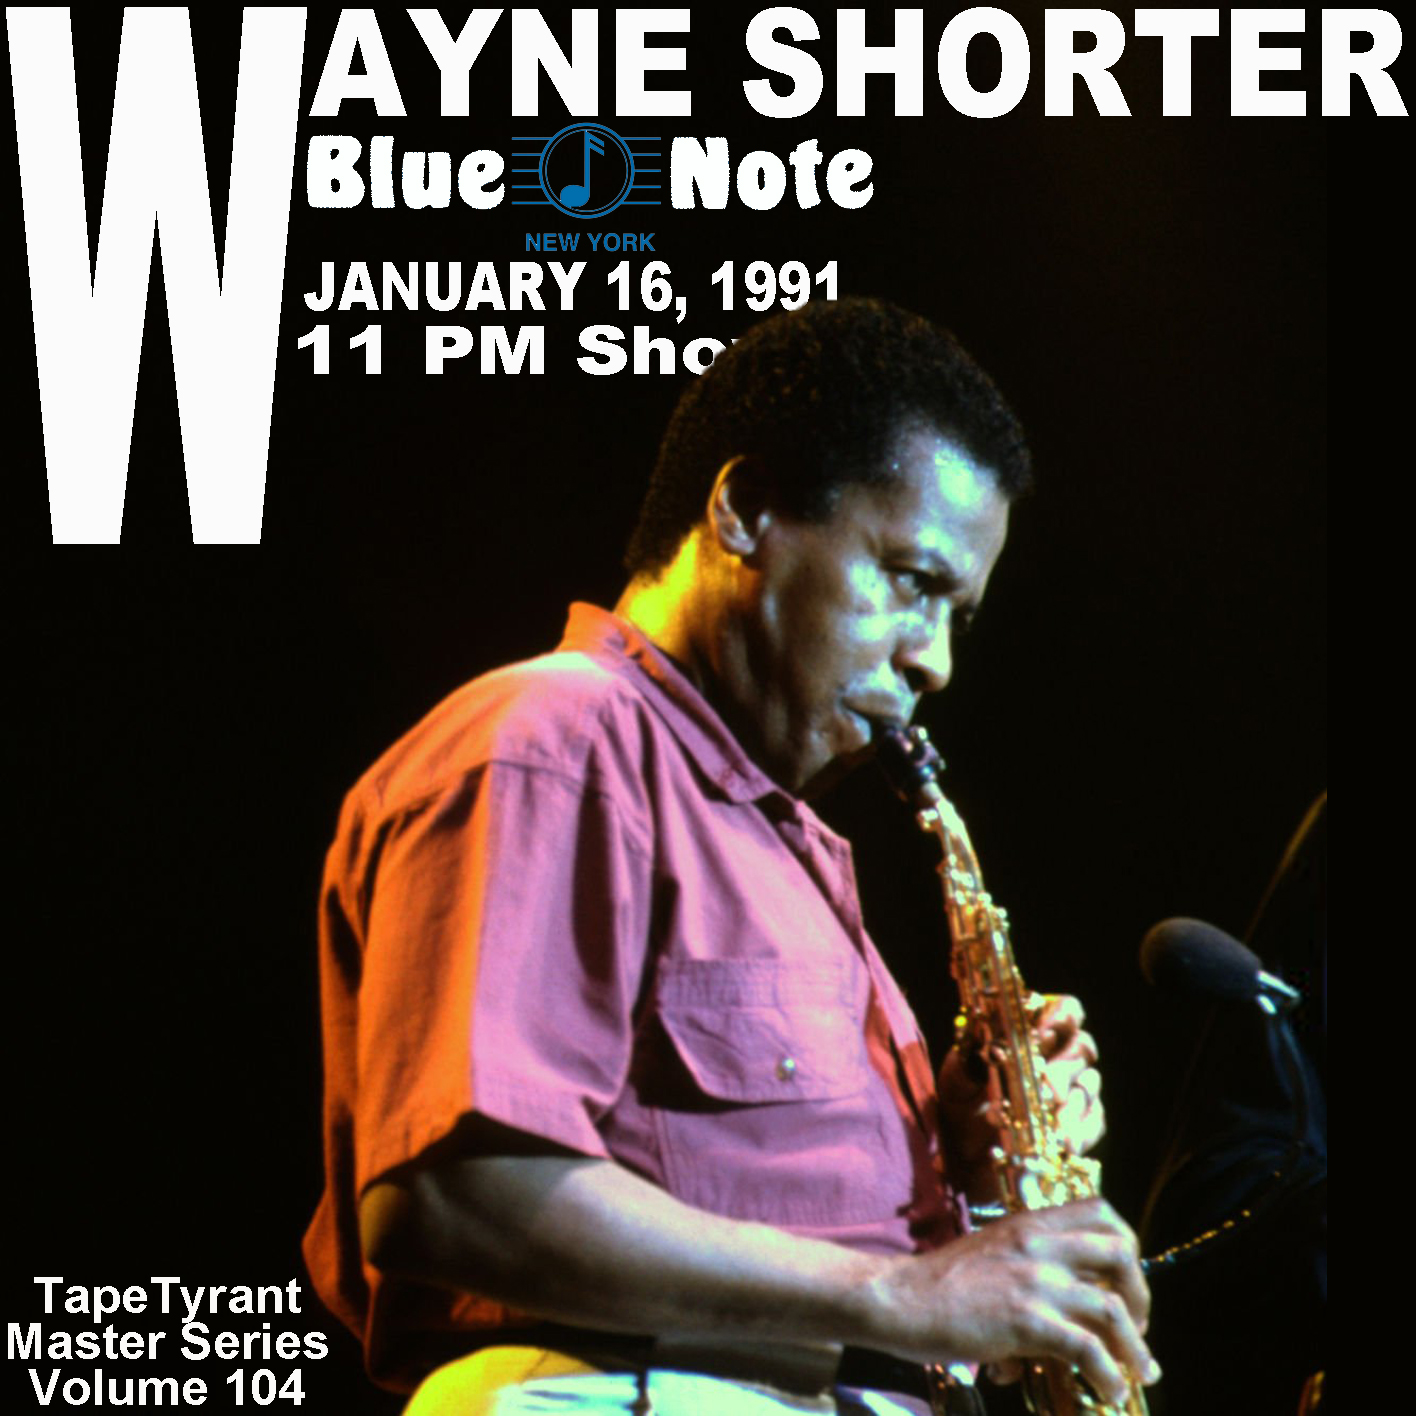 WayneShorter1991-01-16LateShowBlueNoteNYC (2).jpg